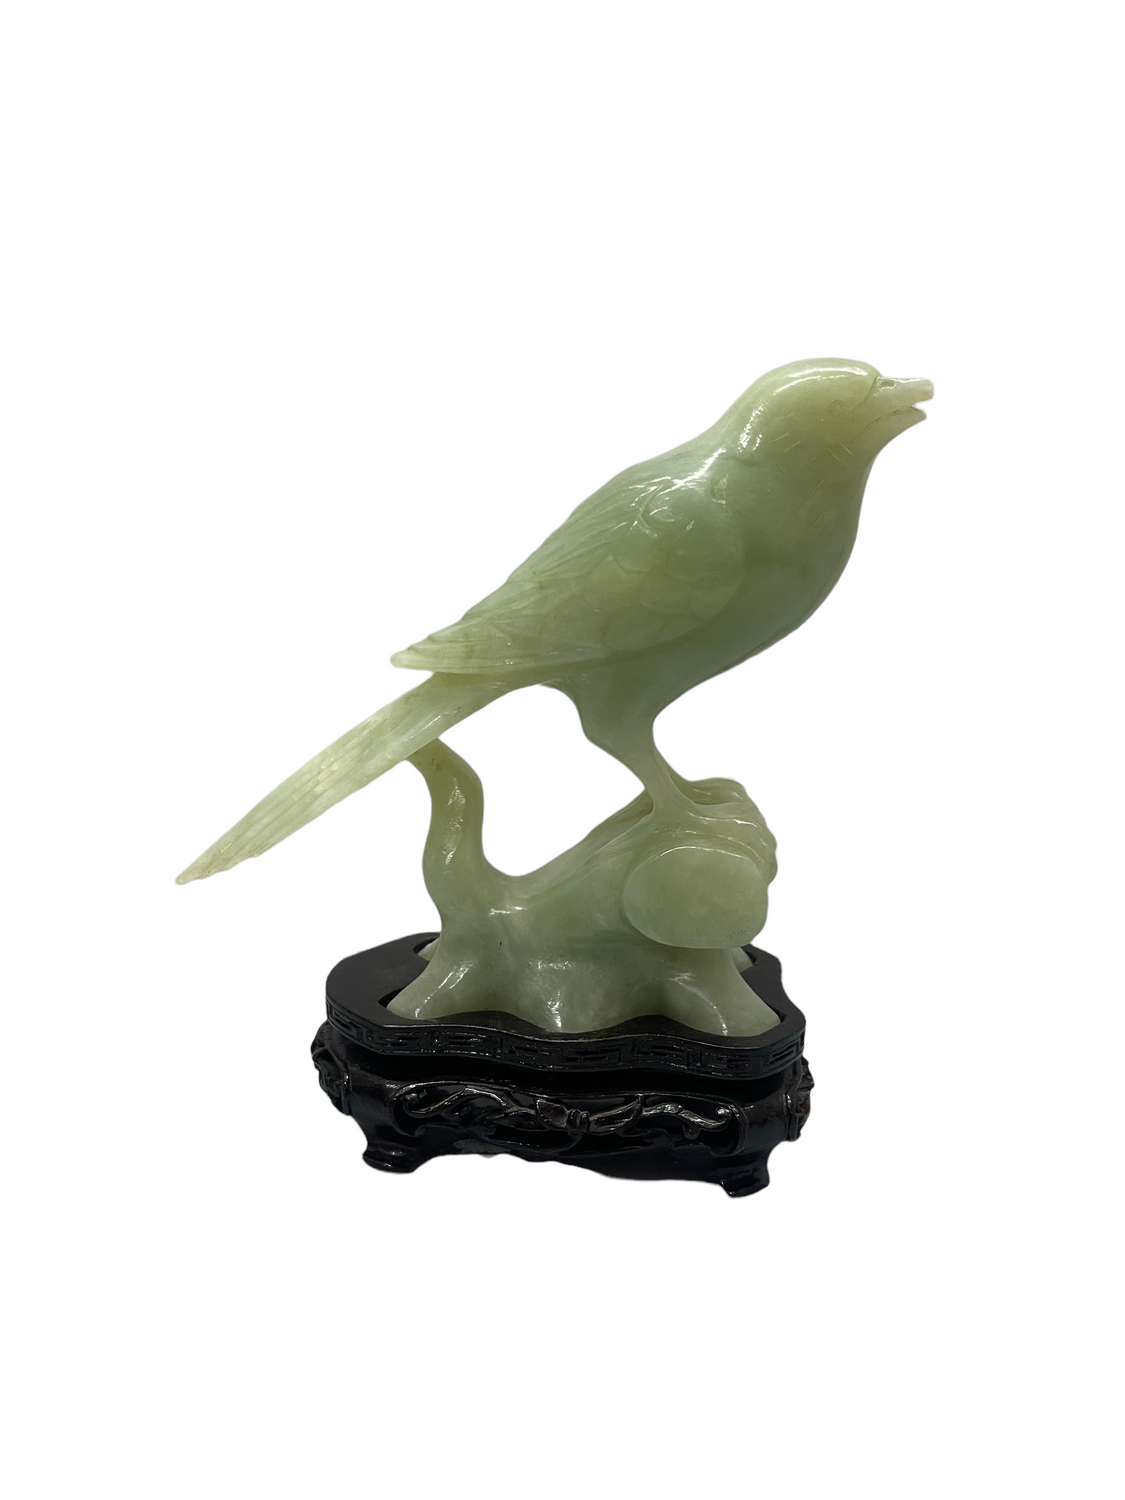 Pair of Vintage Hand-Carved Jade Bird Figurines